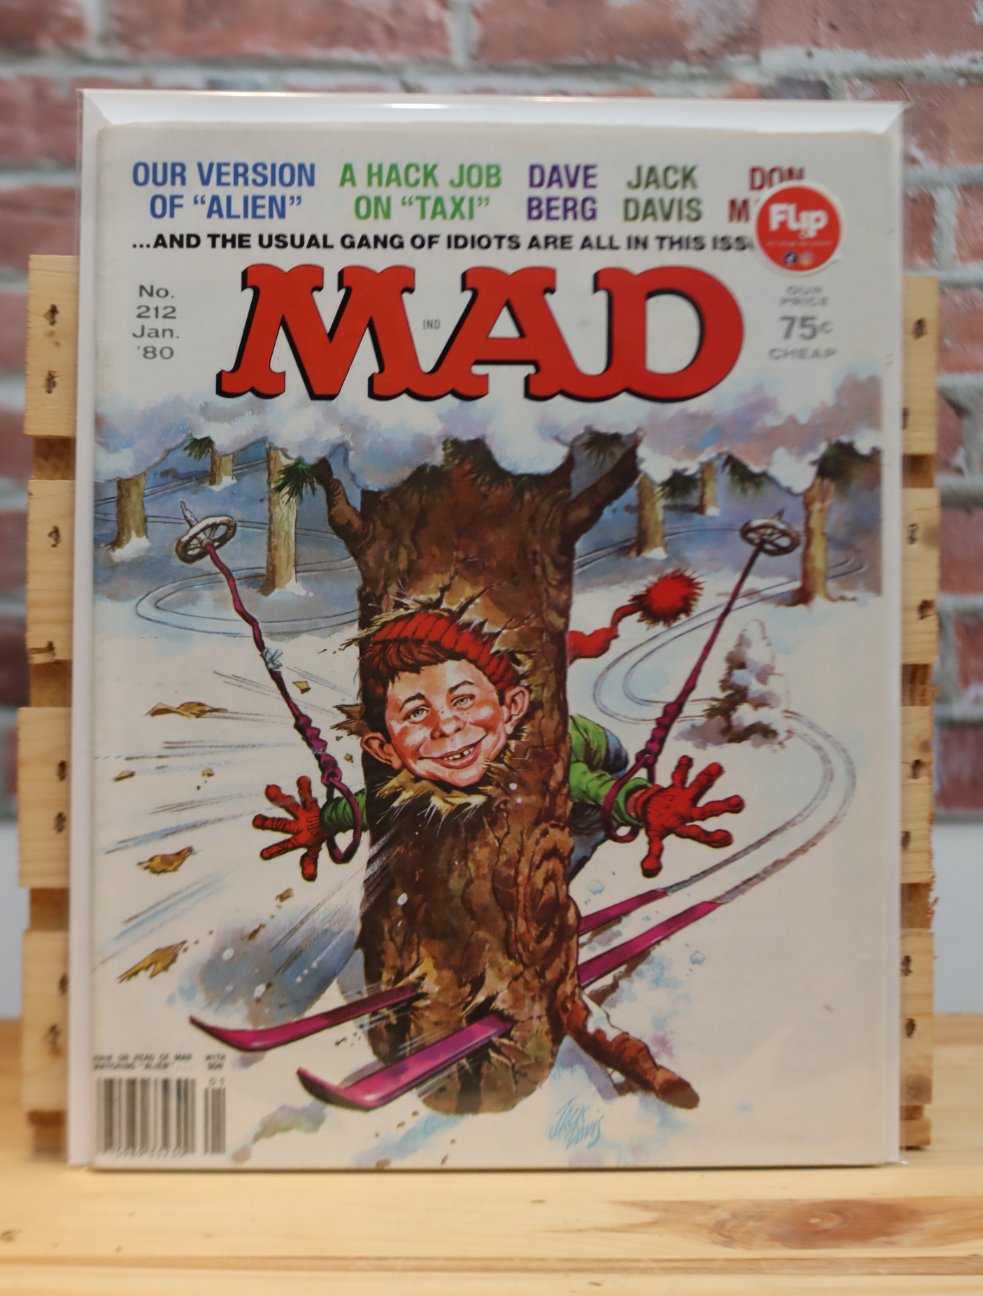 Original Vintage MAD Magazine Issue 212 (January 1980)